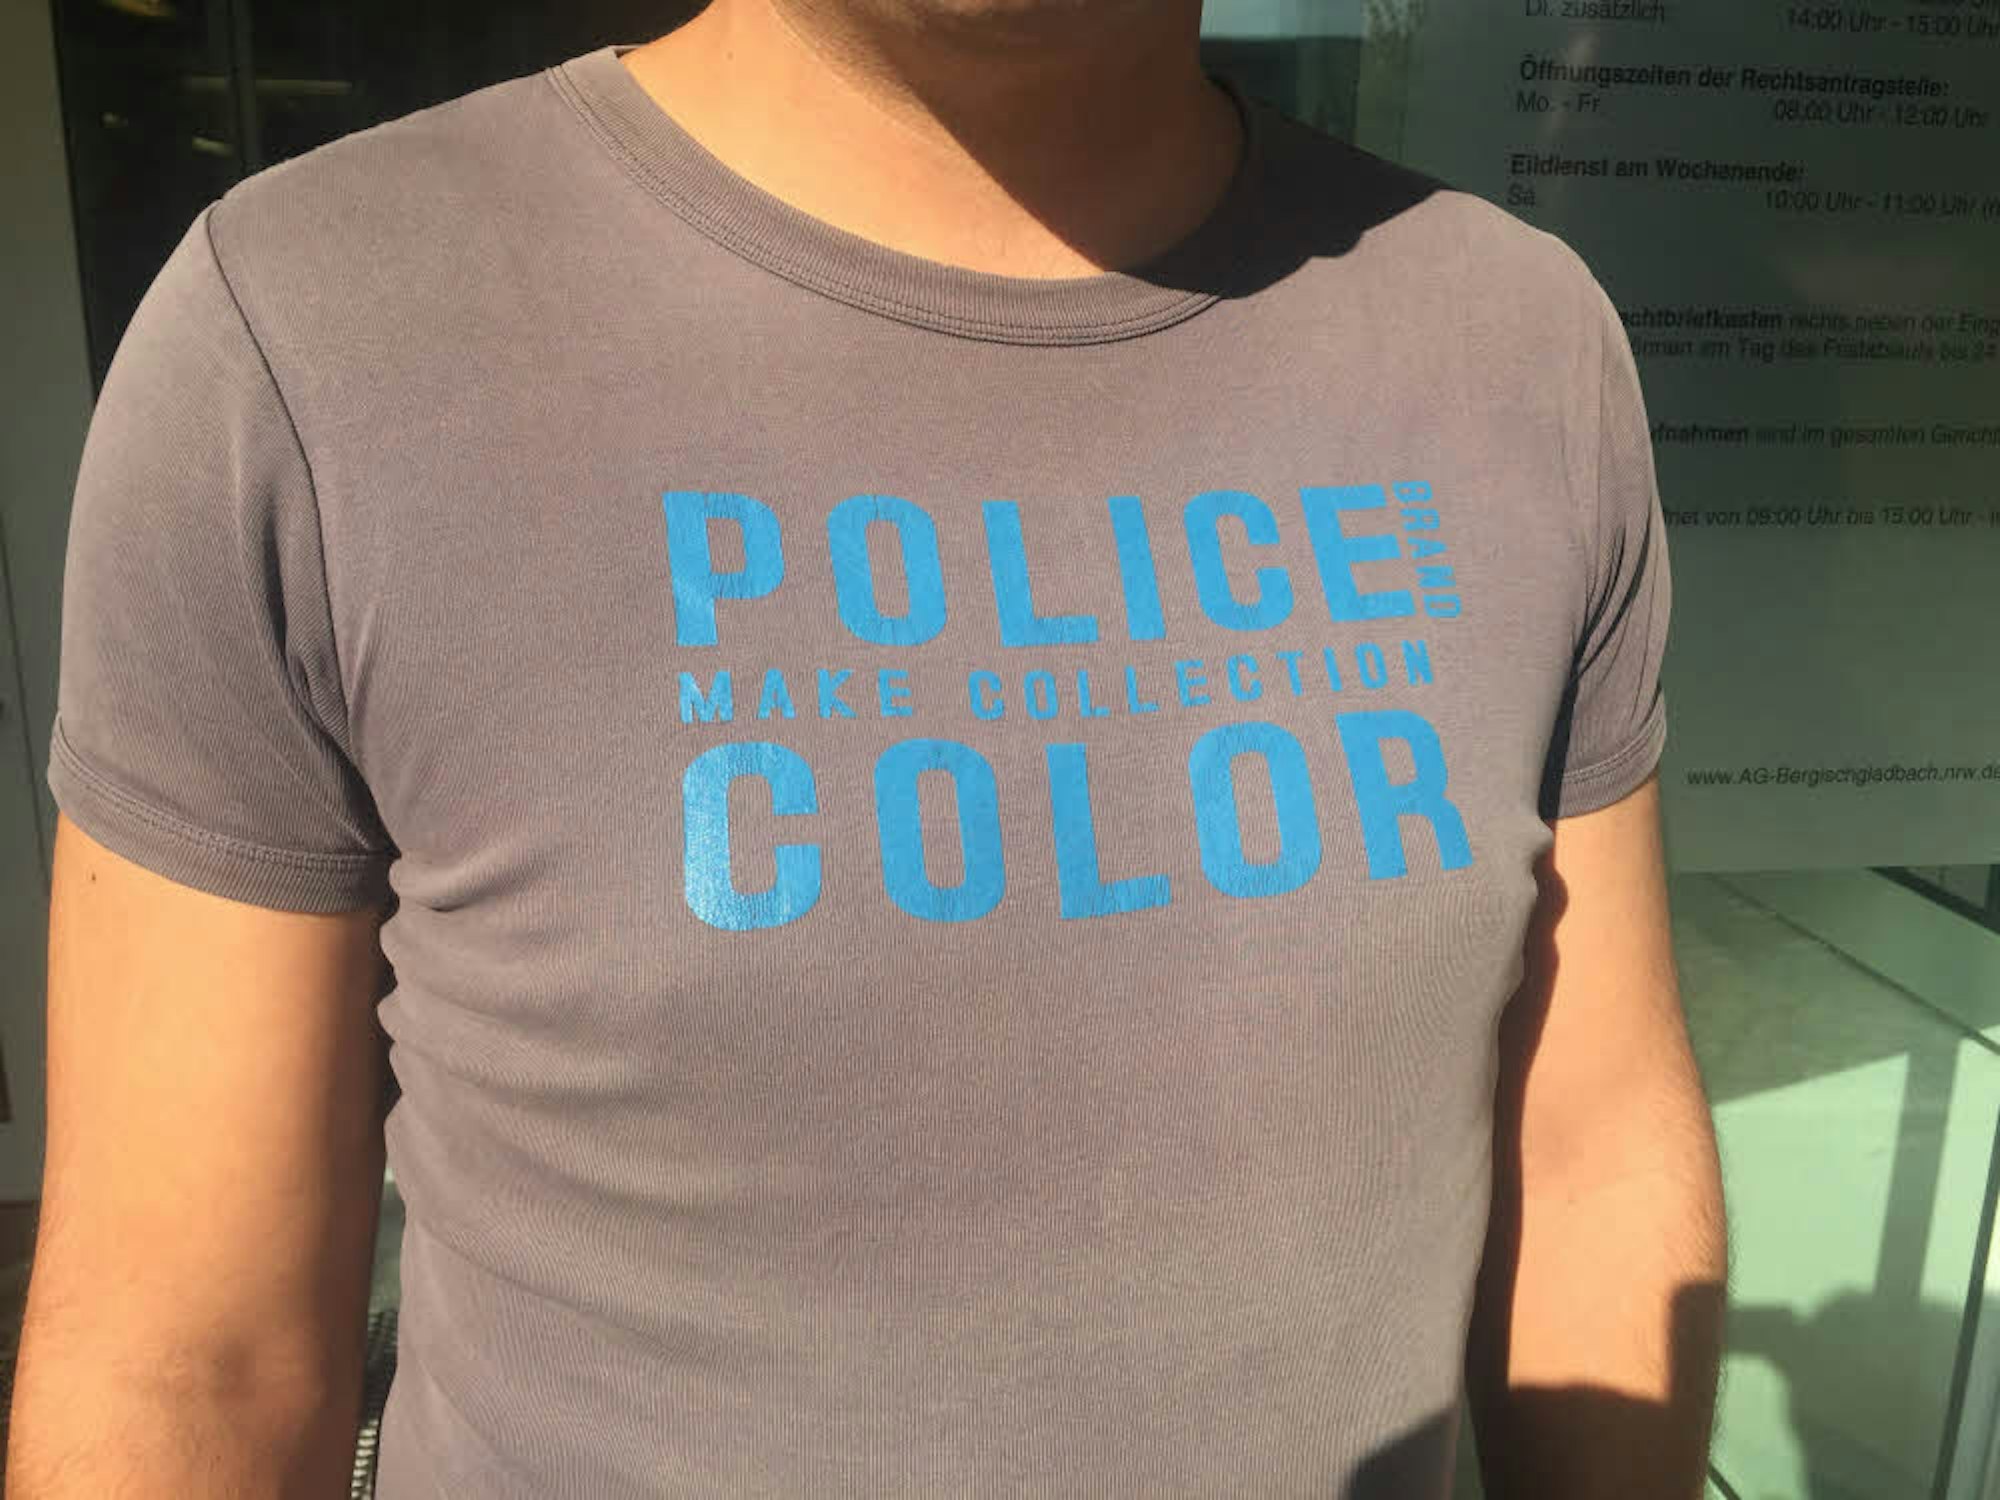 Leicht befremdlich wirkte das T-Shirt mit der Polizei-Aufschrift, dass der Angeklagte gestern im Prozess trug.